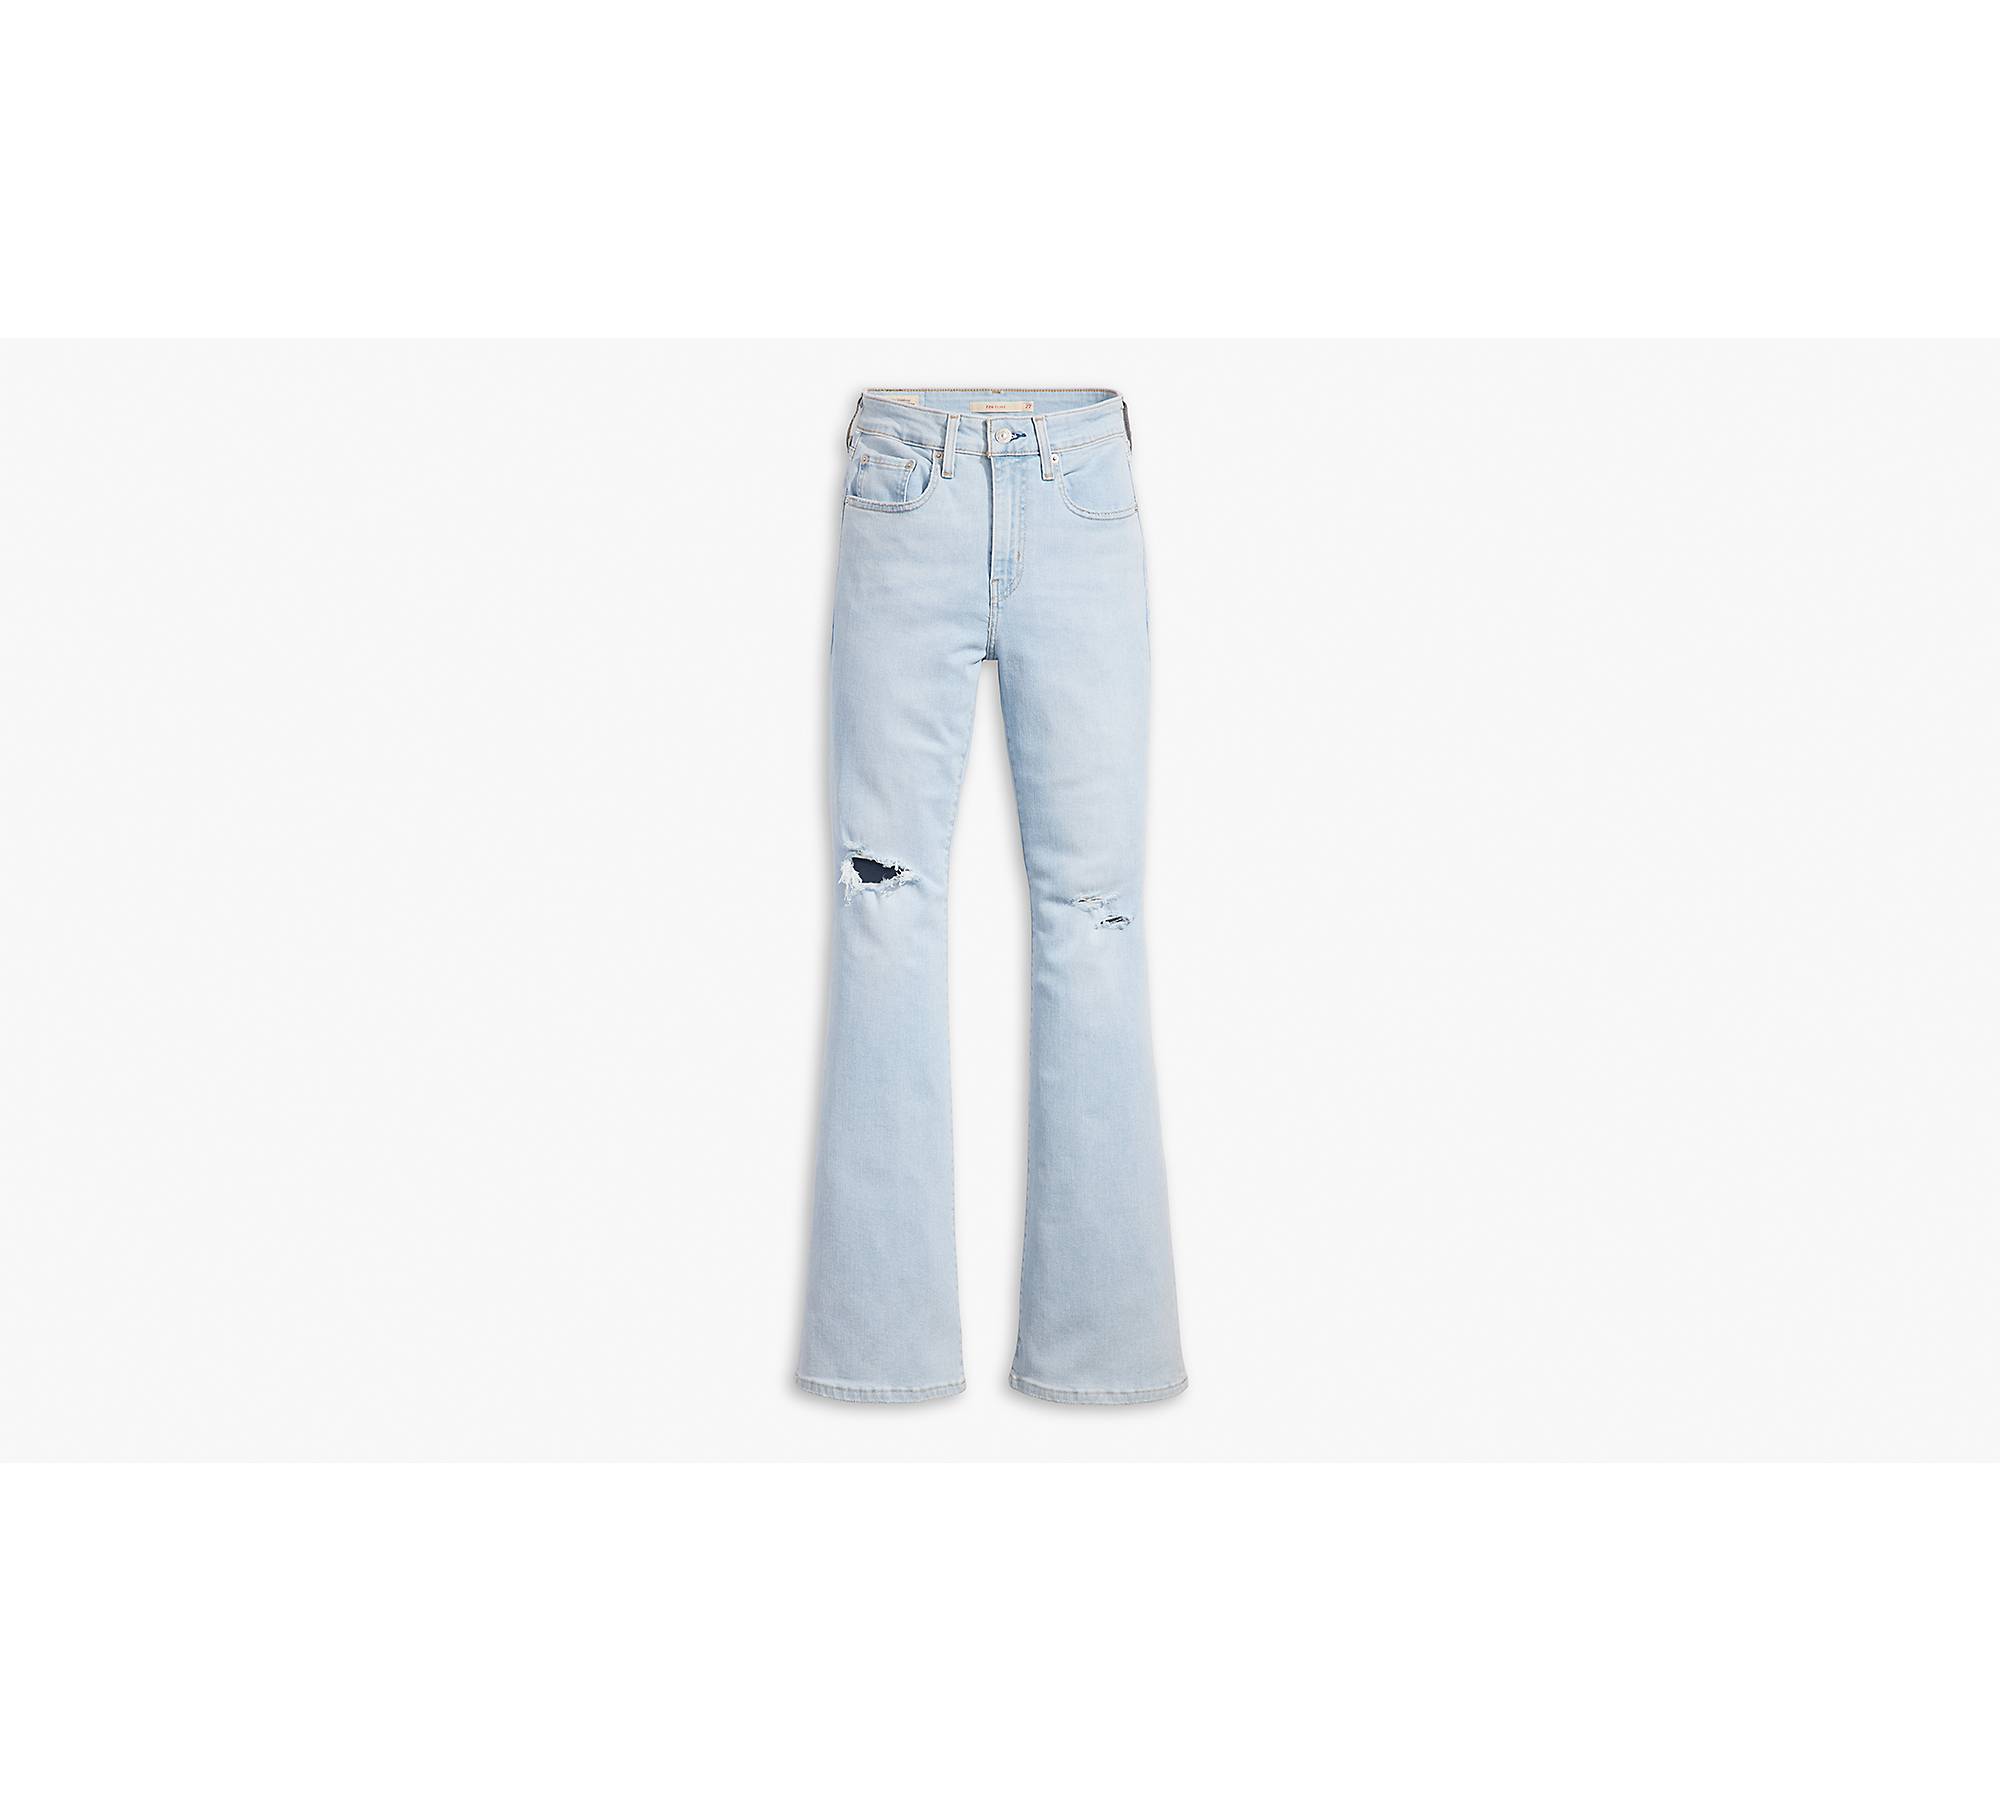 Jeans Acampanados De Talle Alto 726™ - Azul